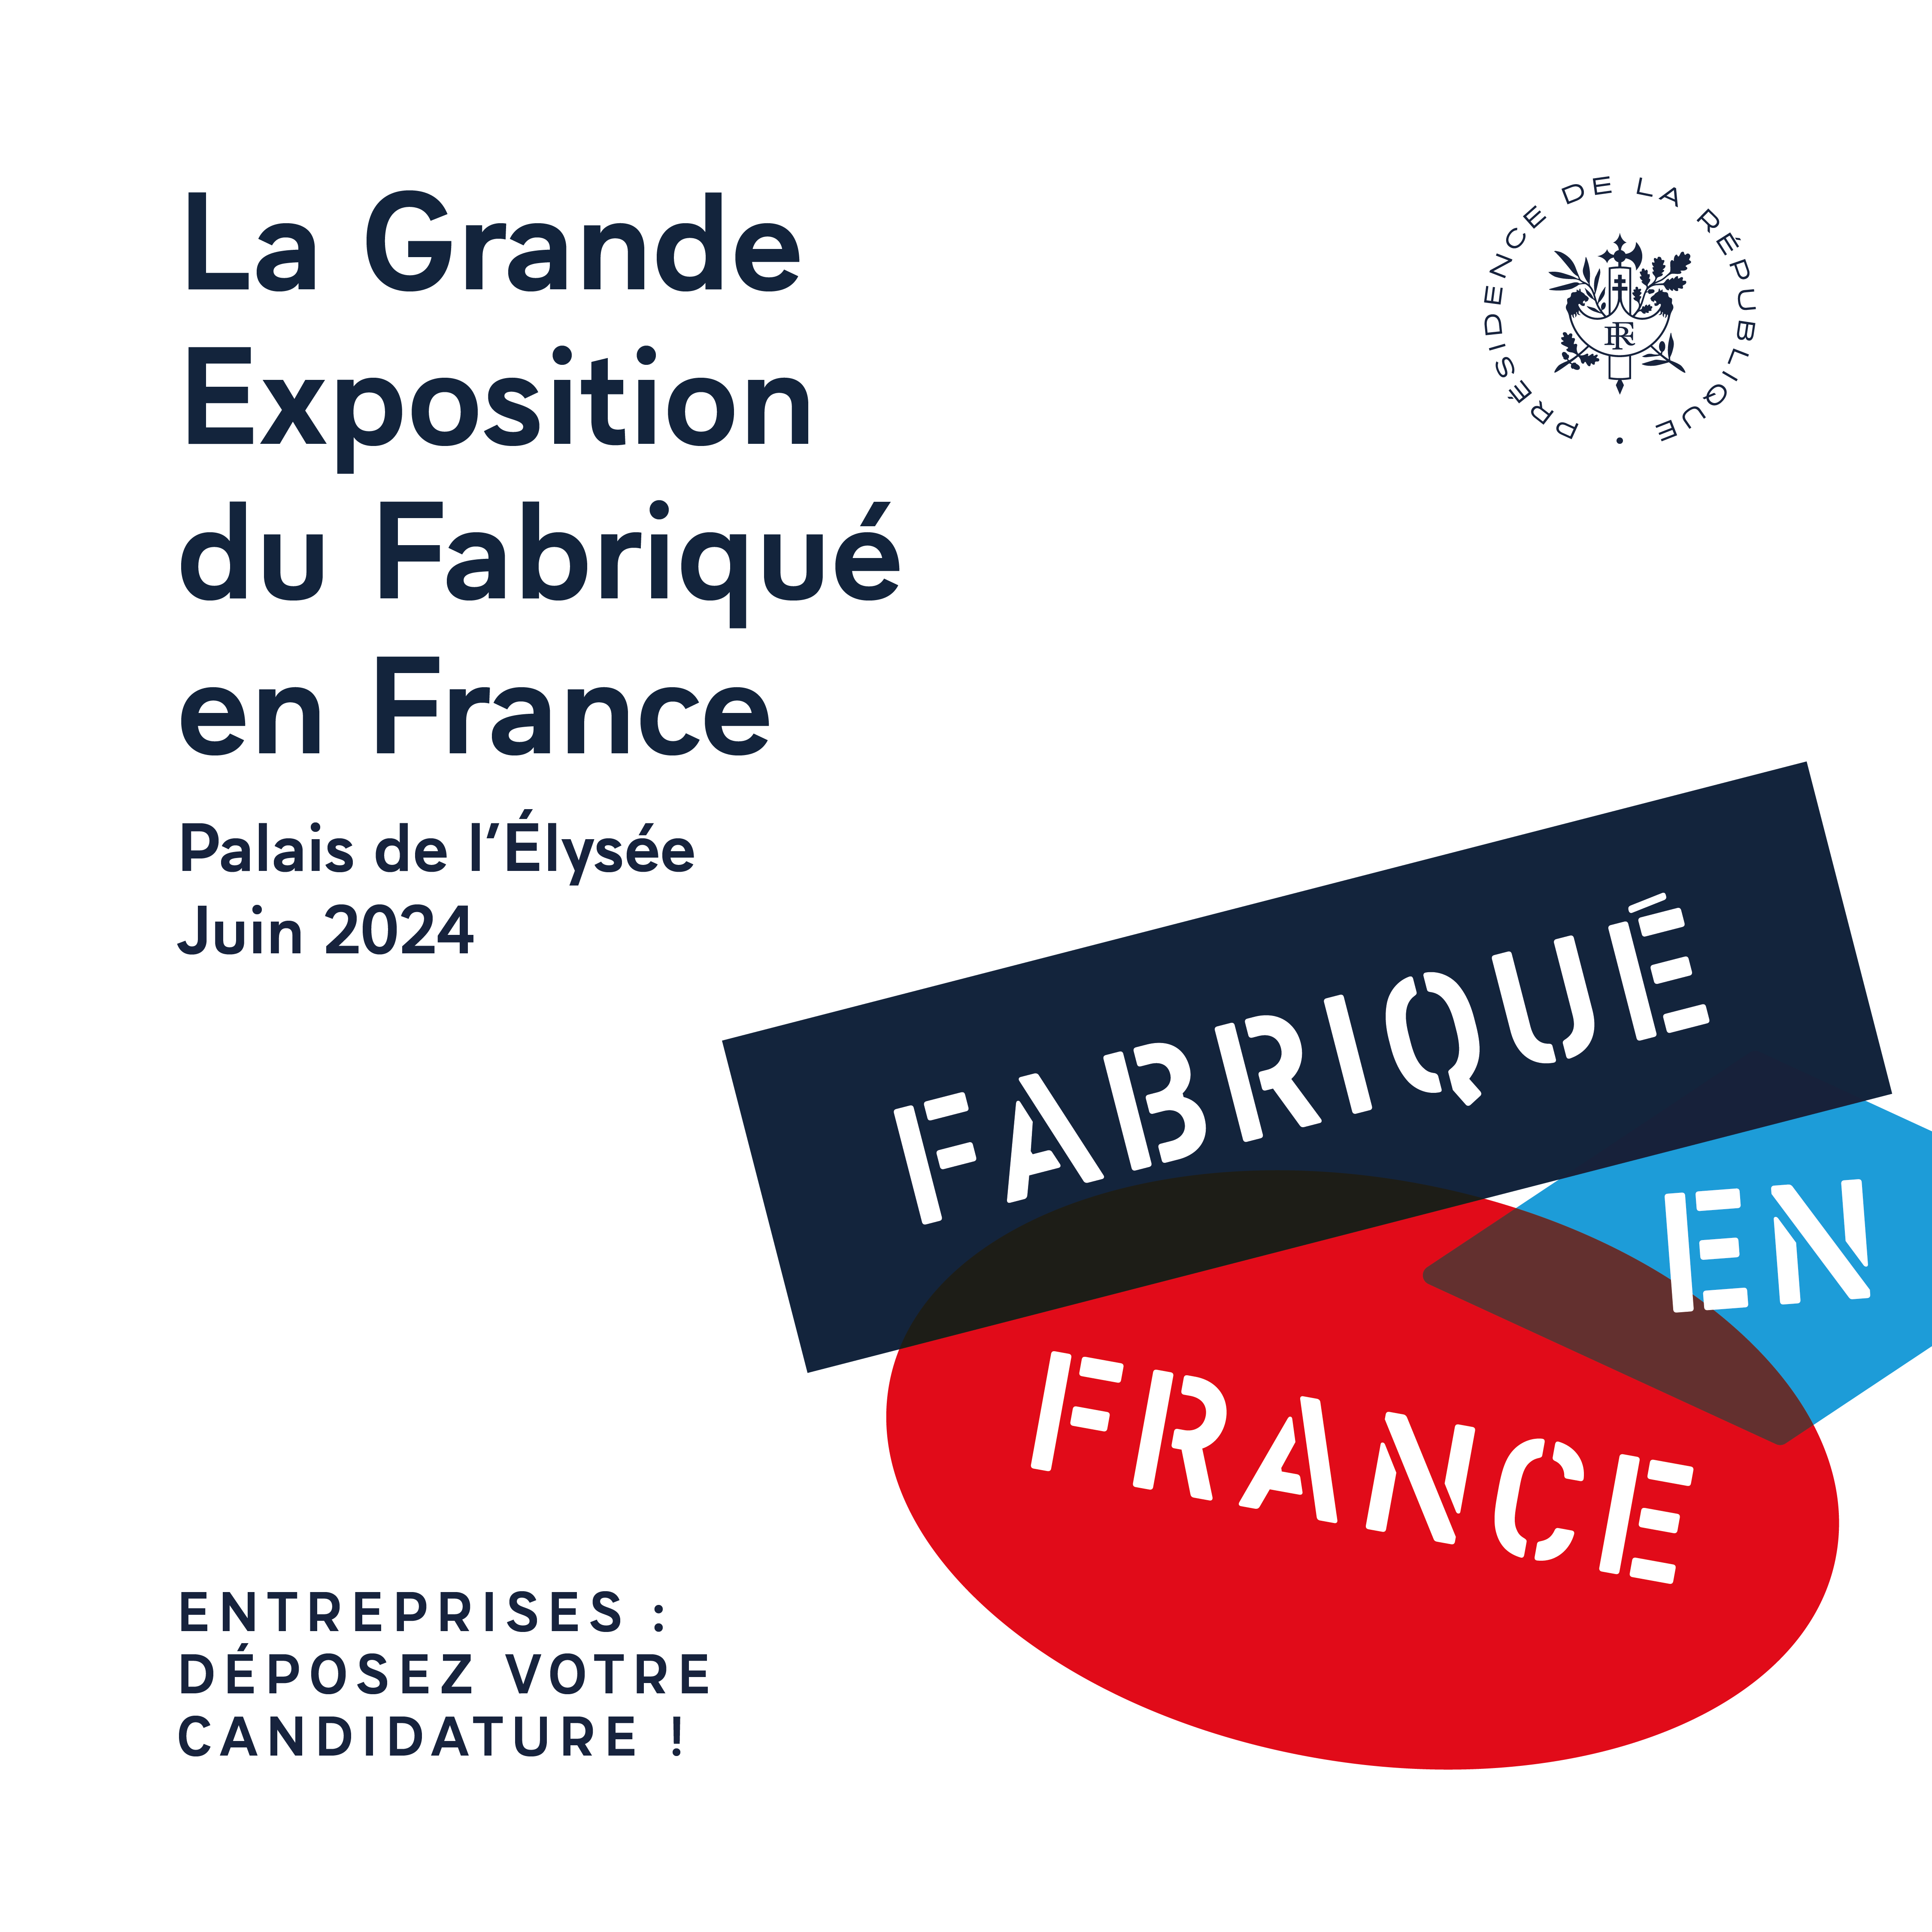 Candidatez à la Grande Exposition du Fabriqué en France